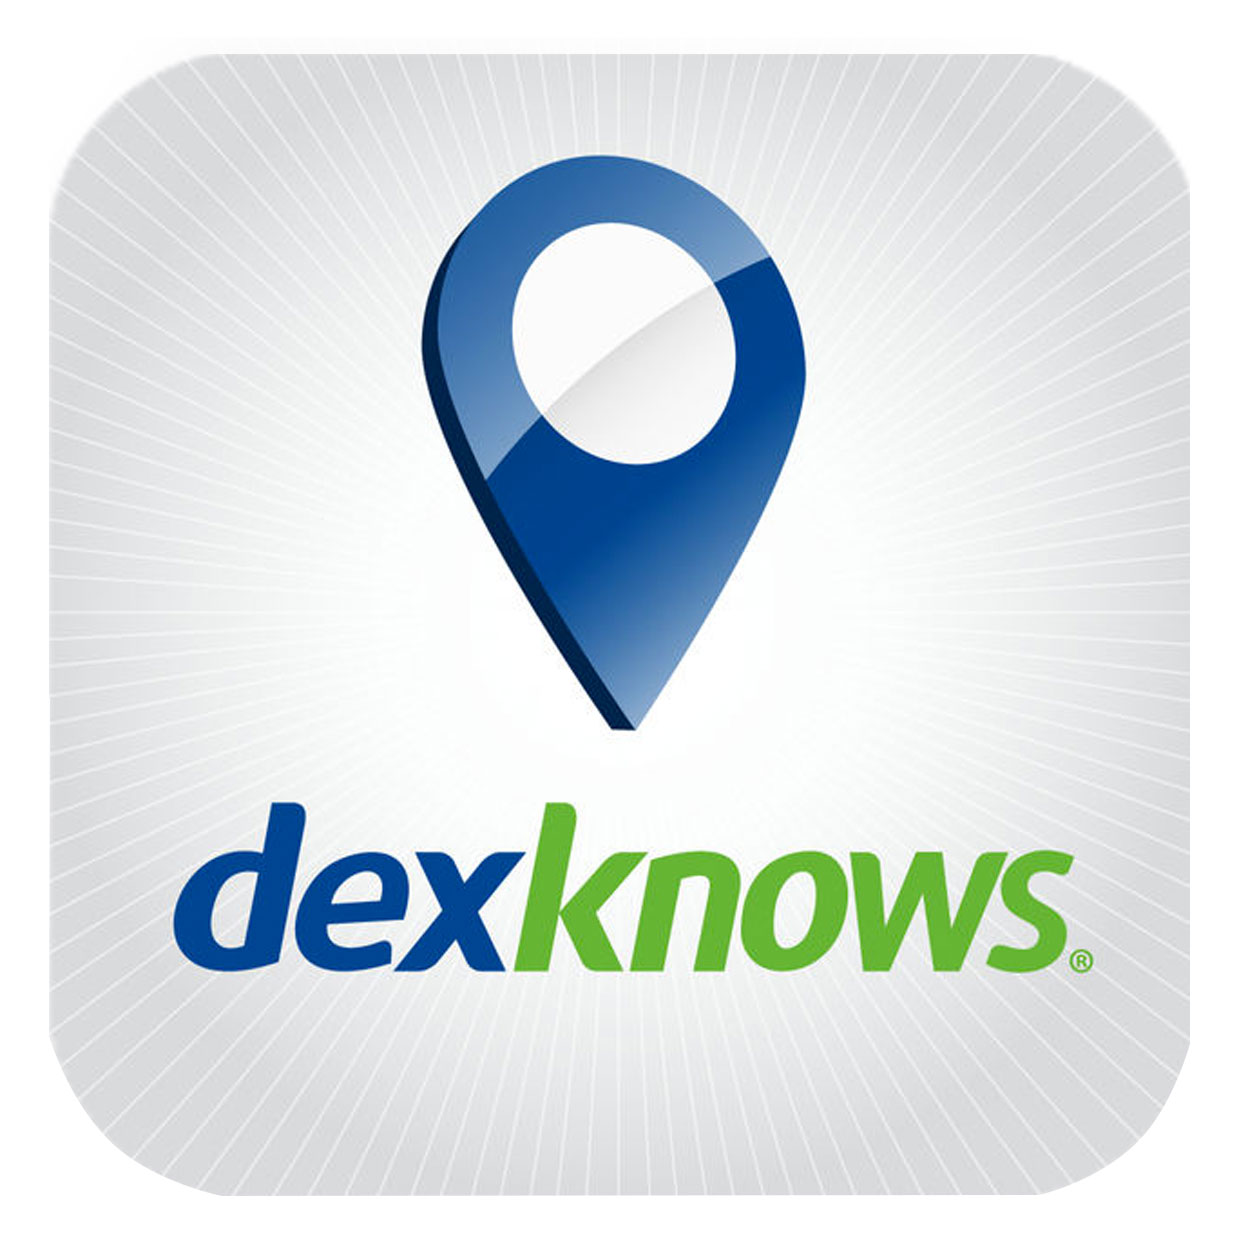 Dexknows - C&M Building Services